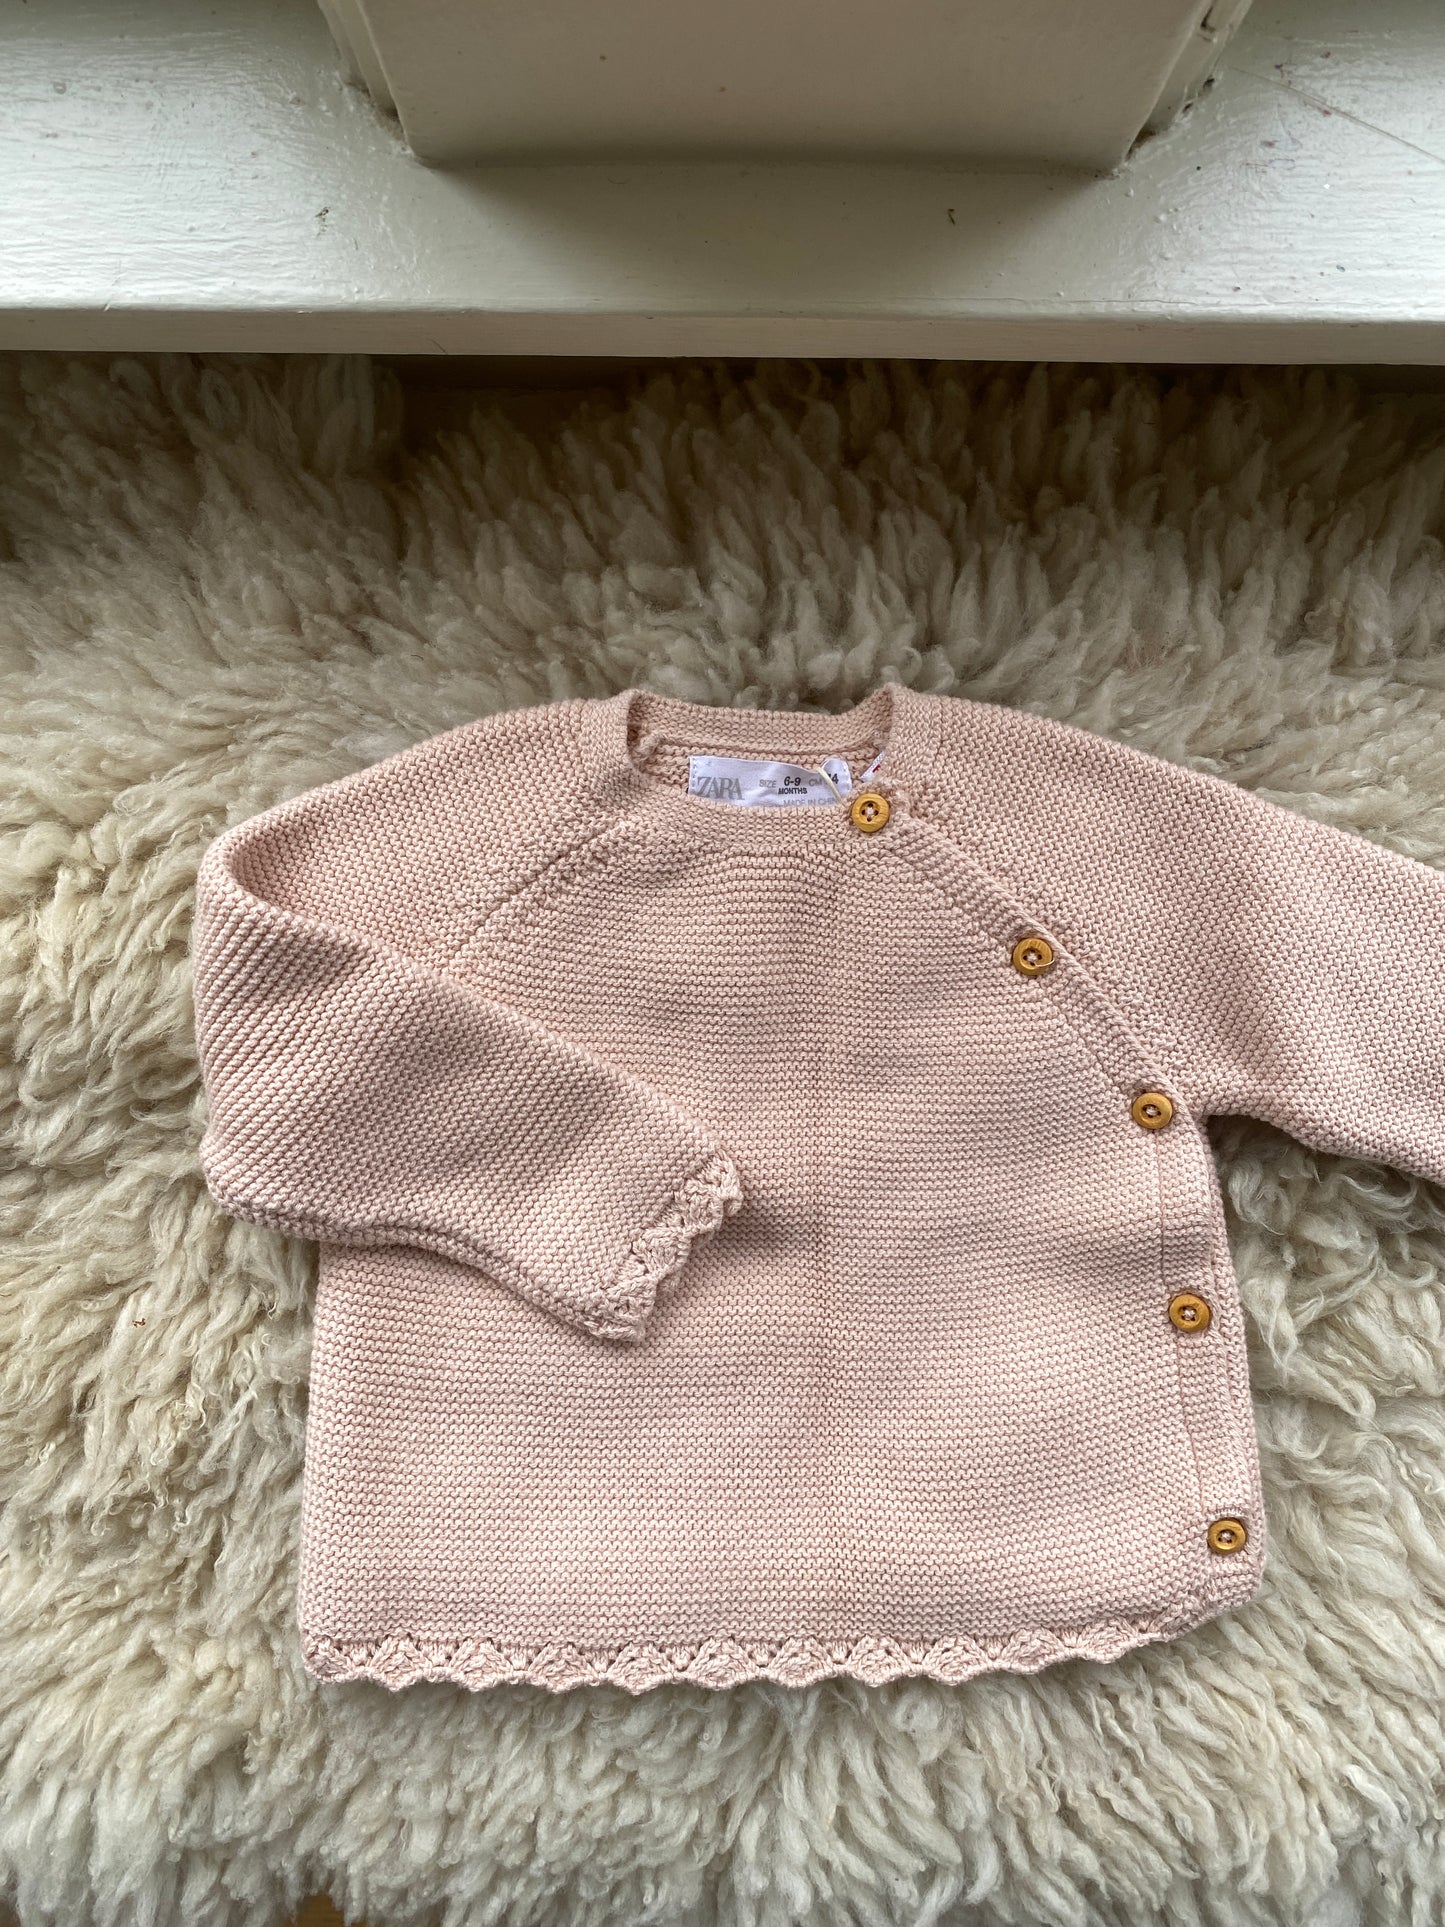 zara knit sweater, 6-9 months